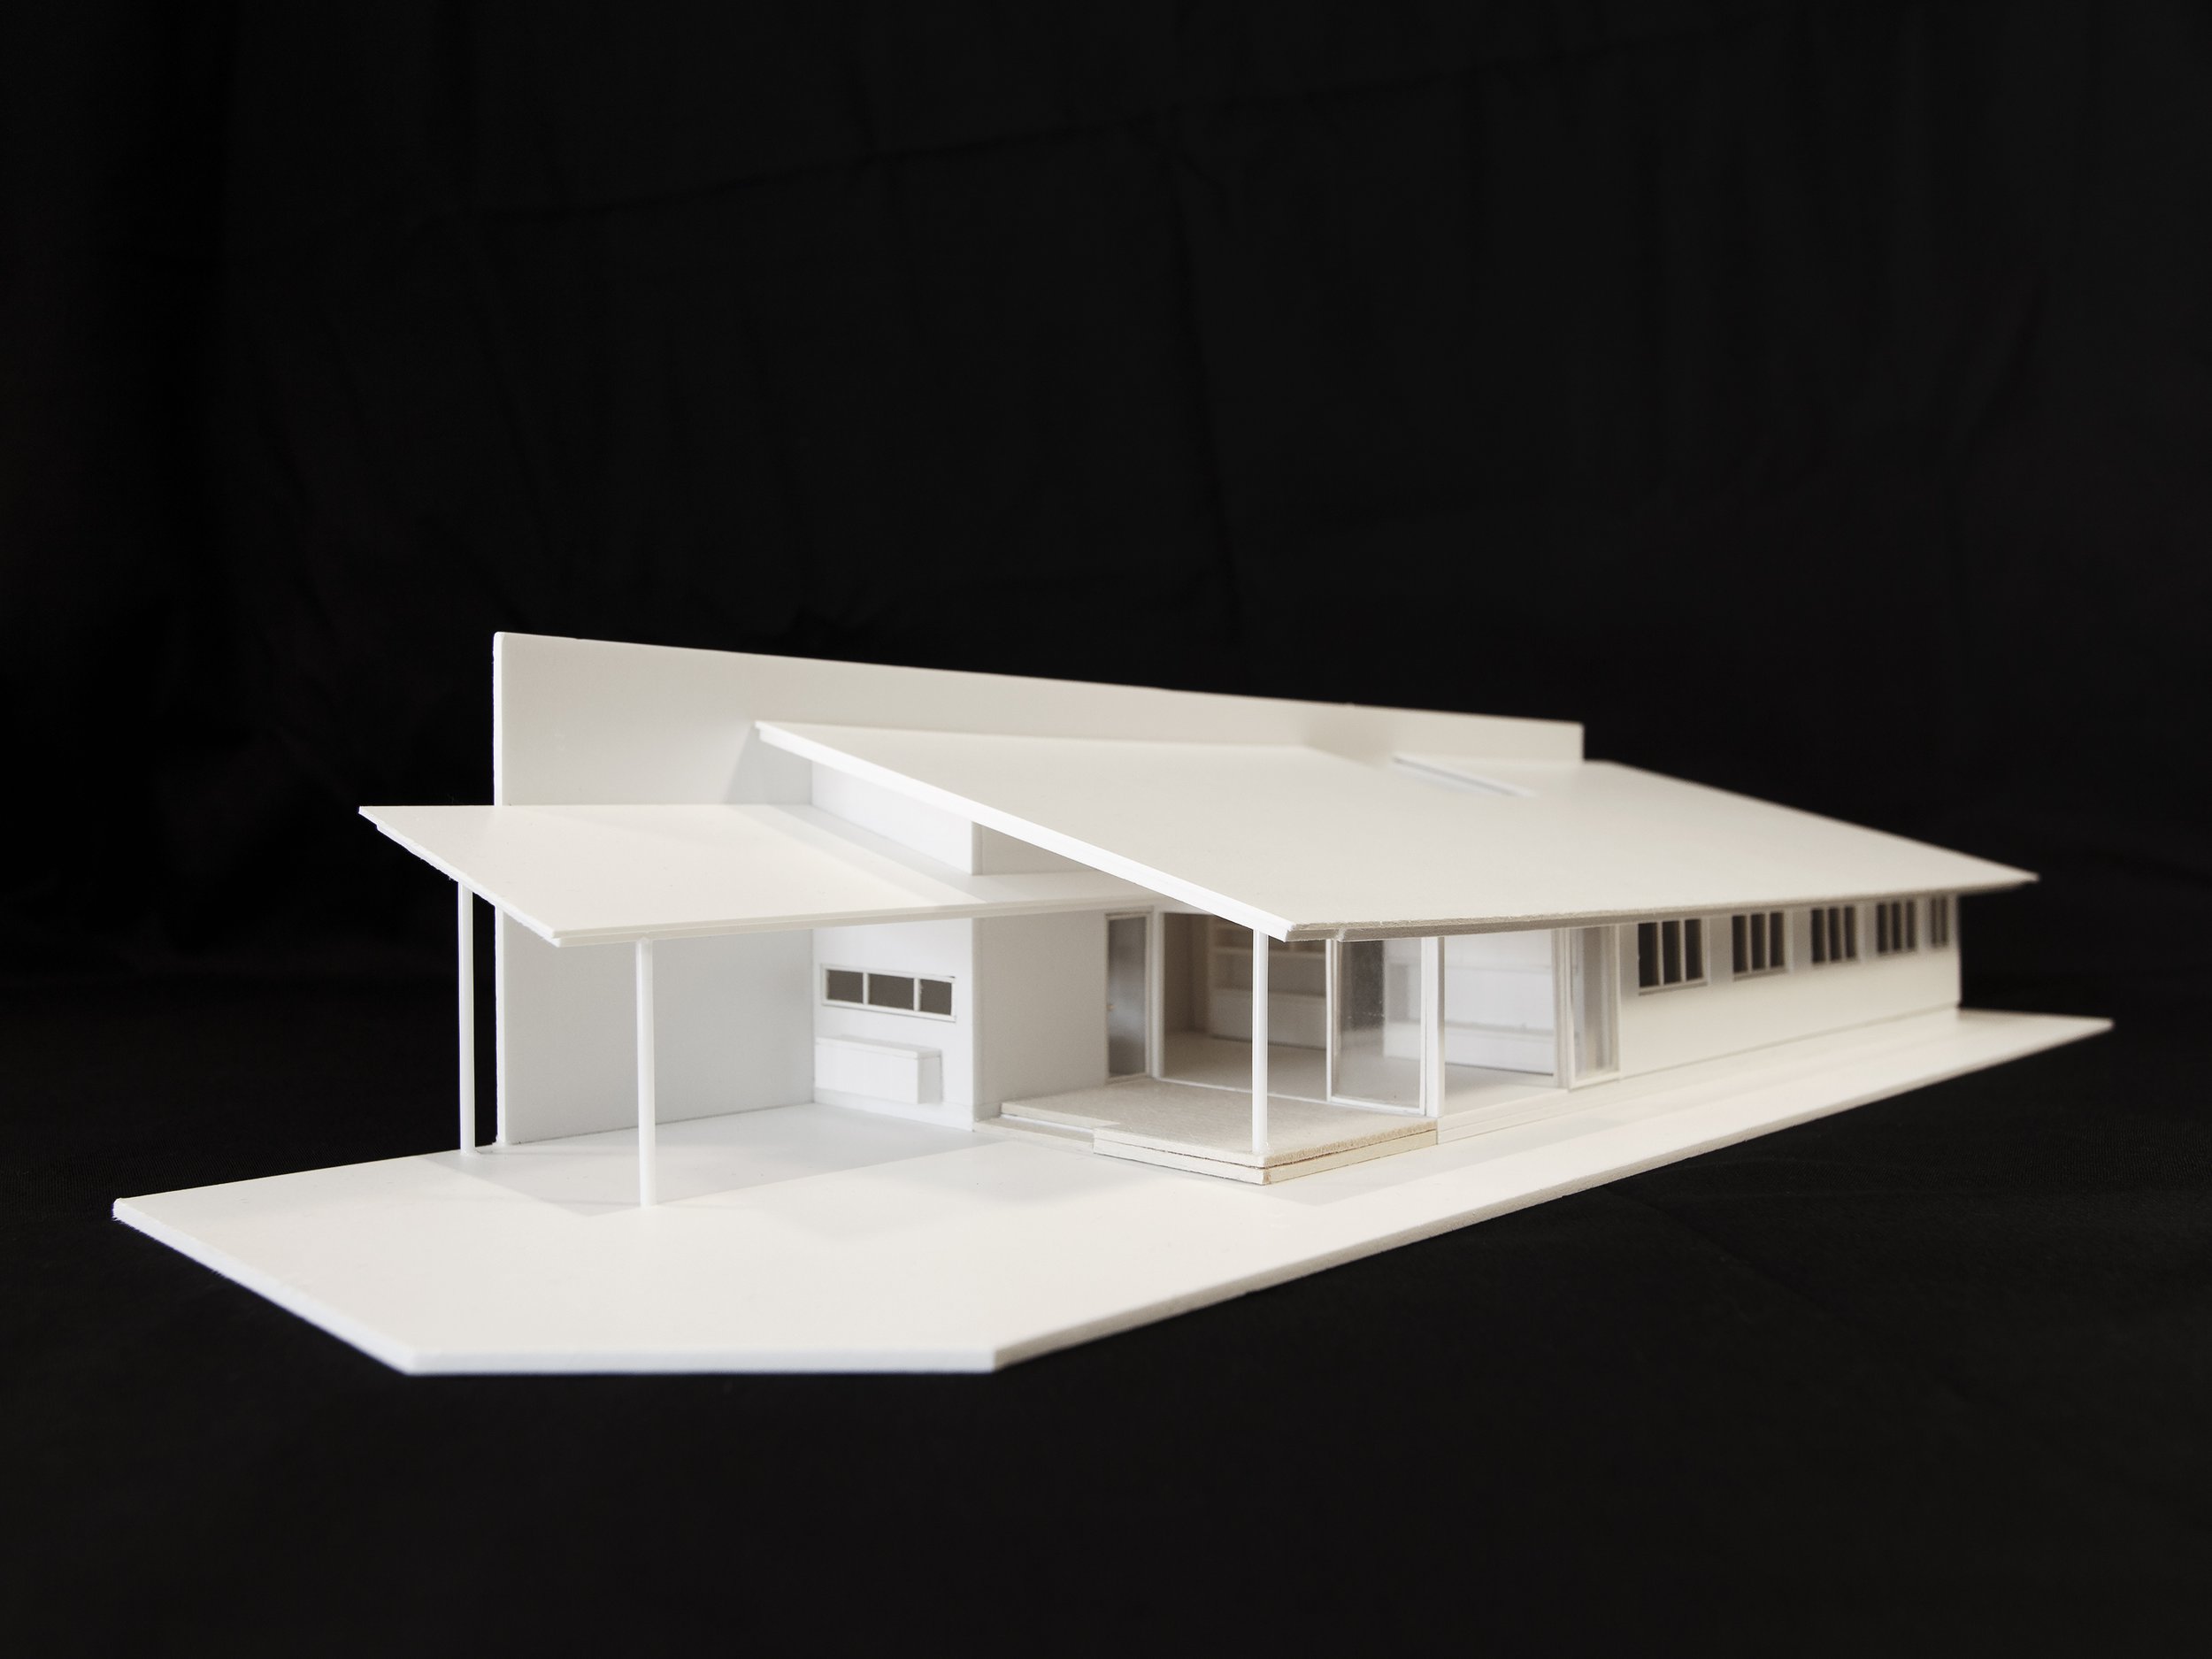 Pitch house-model-diagonal-view.jpg